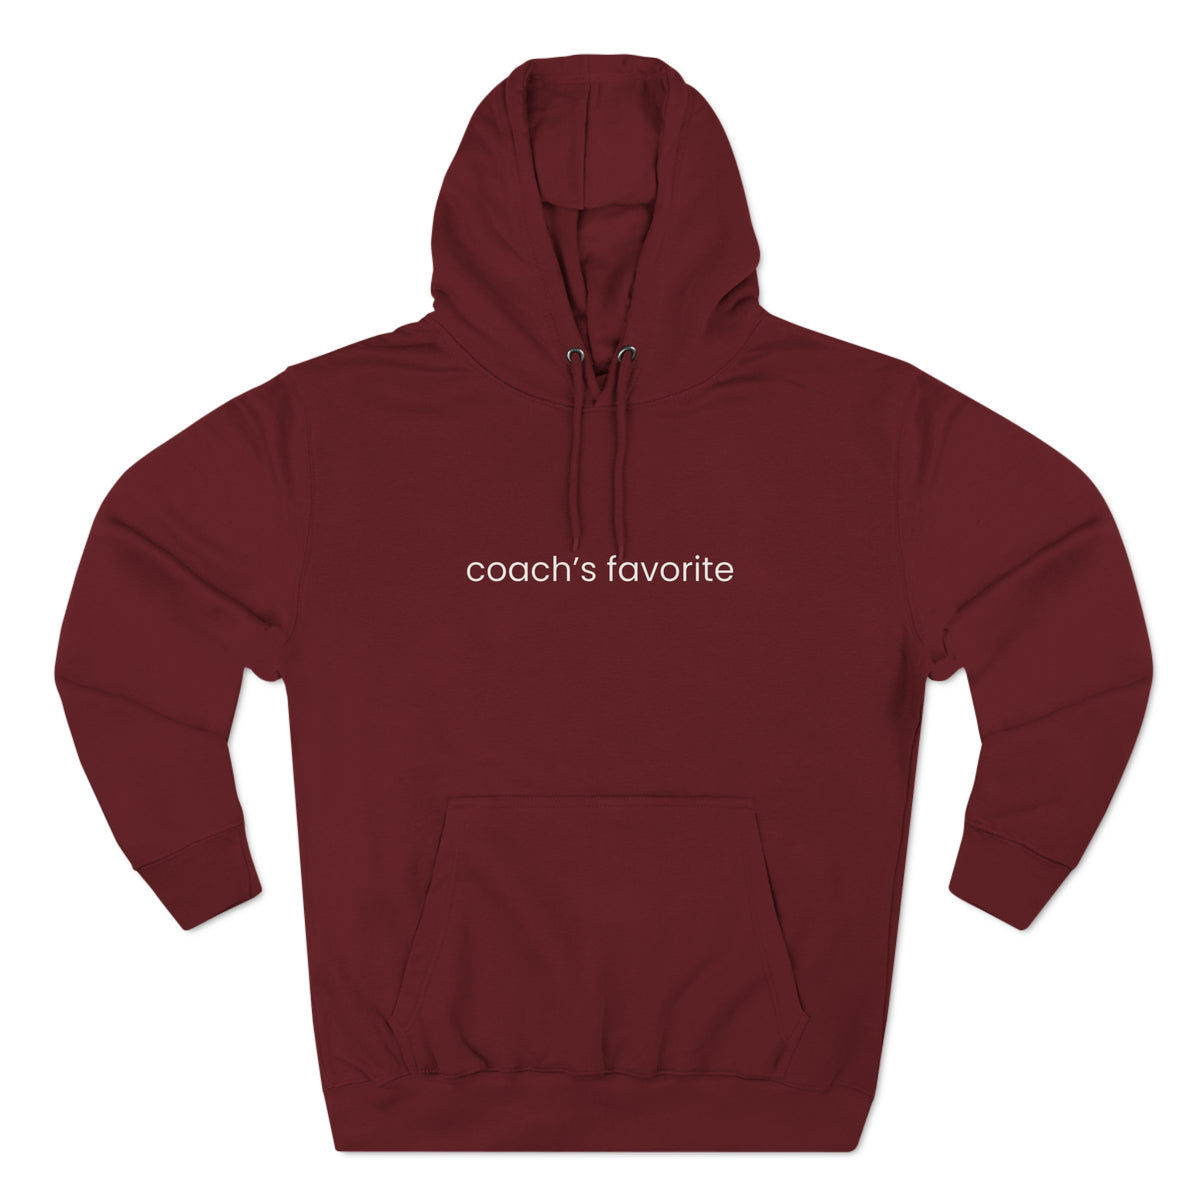 Coach's Favorite Adult Hooded Sweatshirt